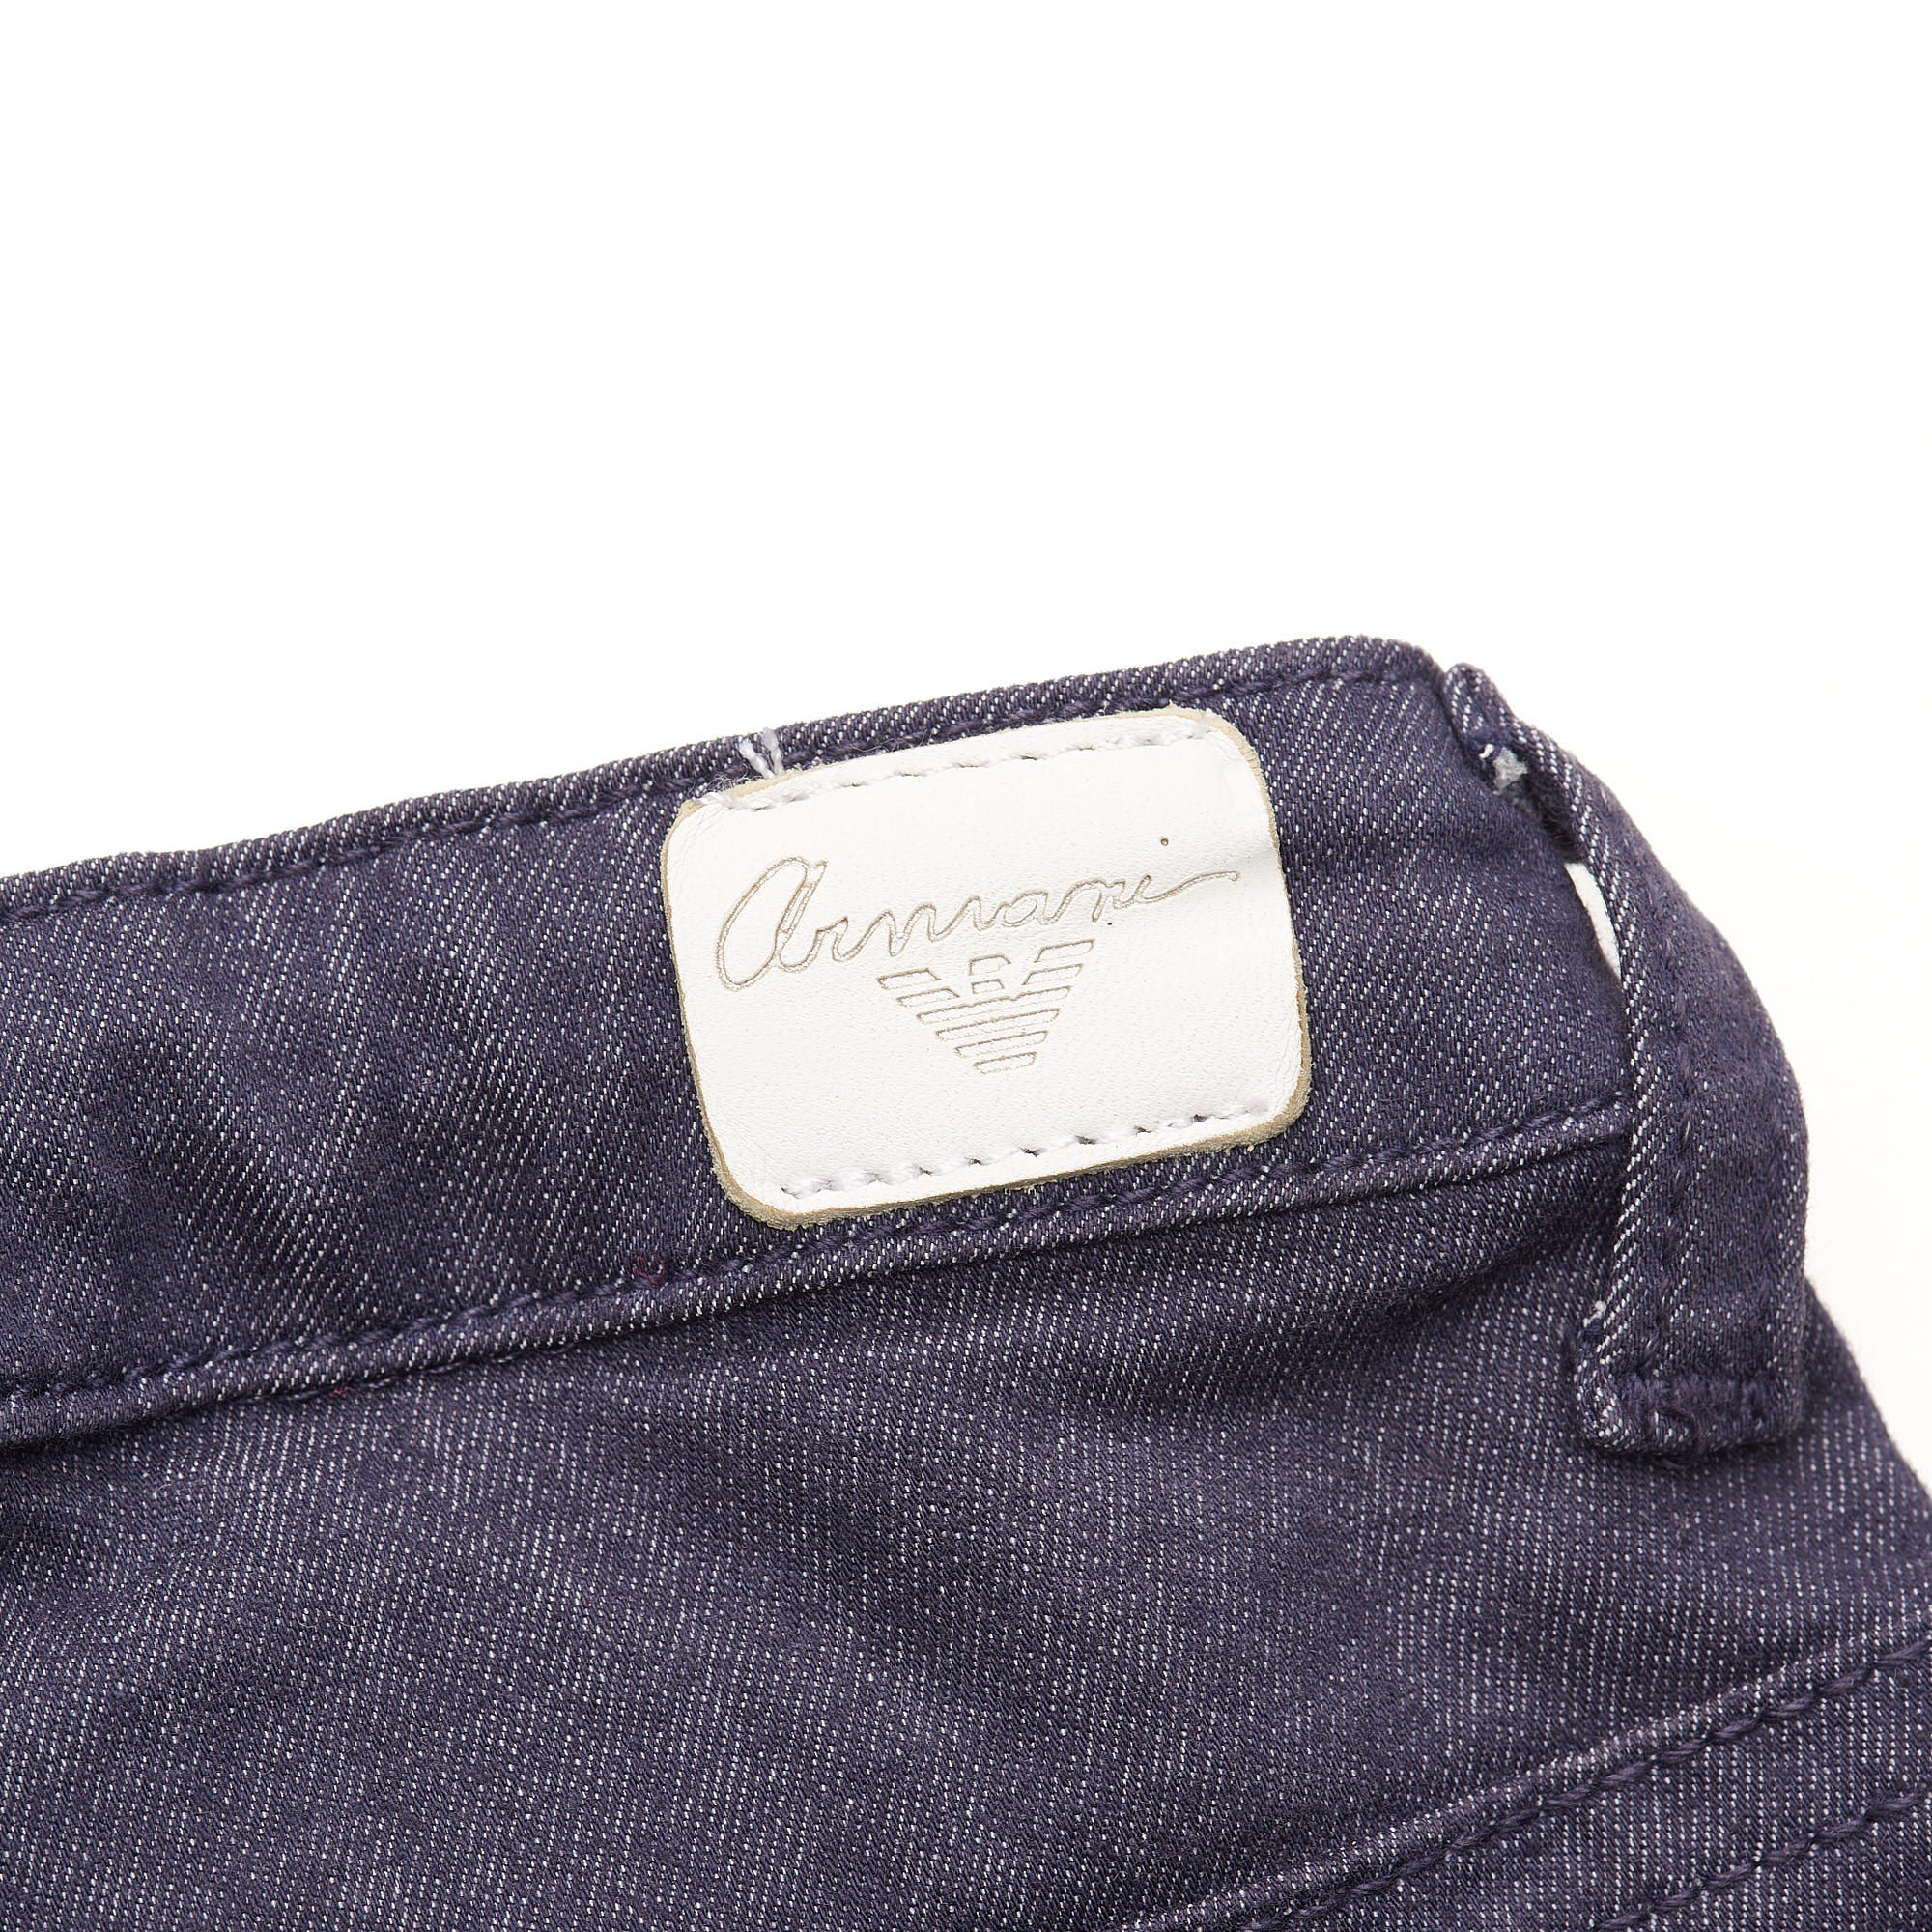 ARMANI JUNIOR Blue Cotton Blend Boys Jeans Pants Size 8A / 130cm 